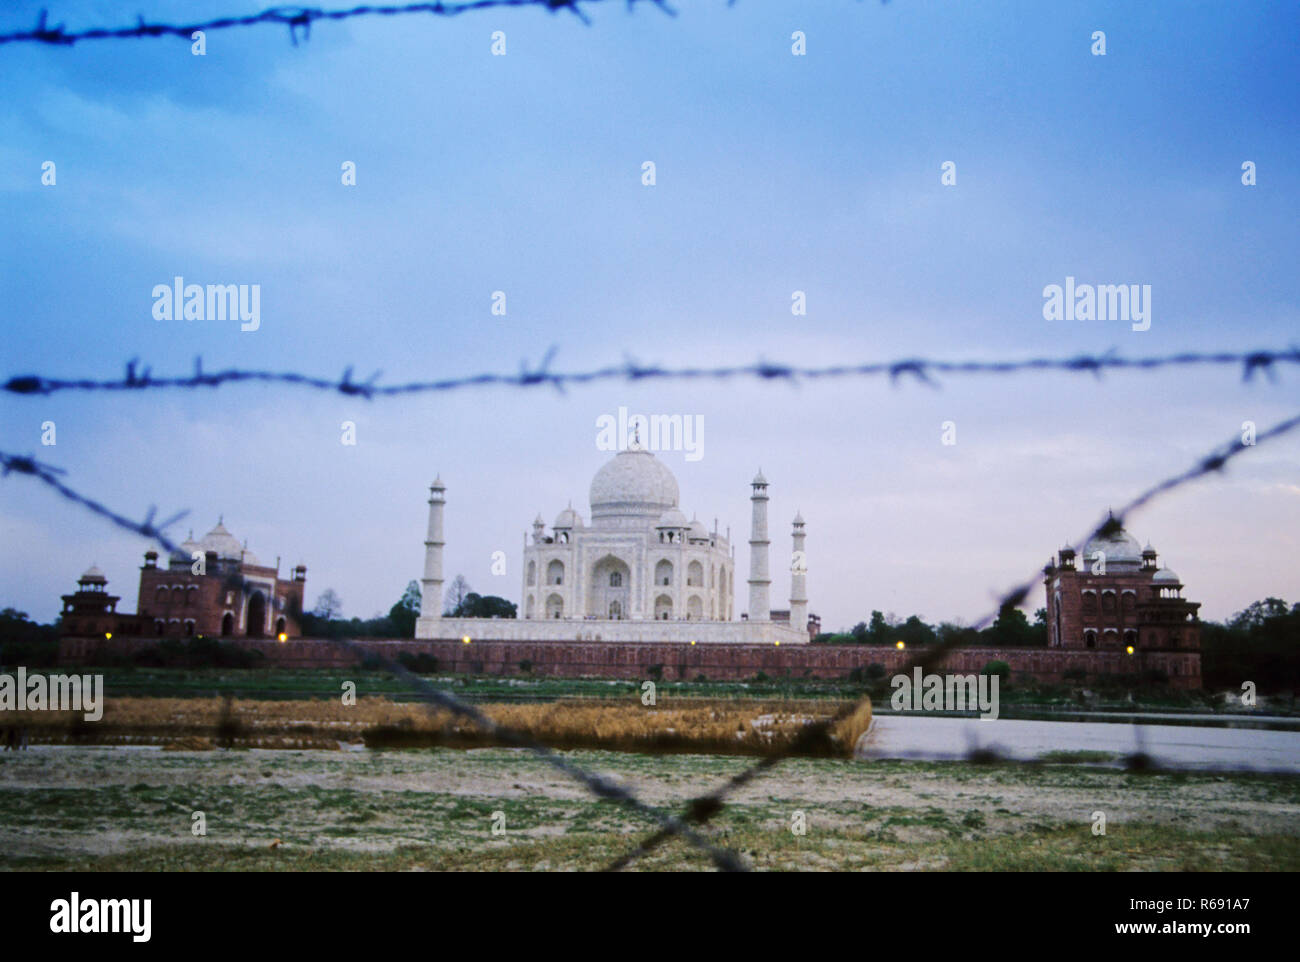 Taj Mahal, mausoleo in marmo bianco d'avorio, meraviglie del mondo, patrimonio dell'umanità dell'UNESCO, Agra, Uttar Pradesh, India, Asia Foto Stock